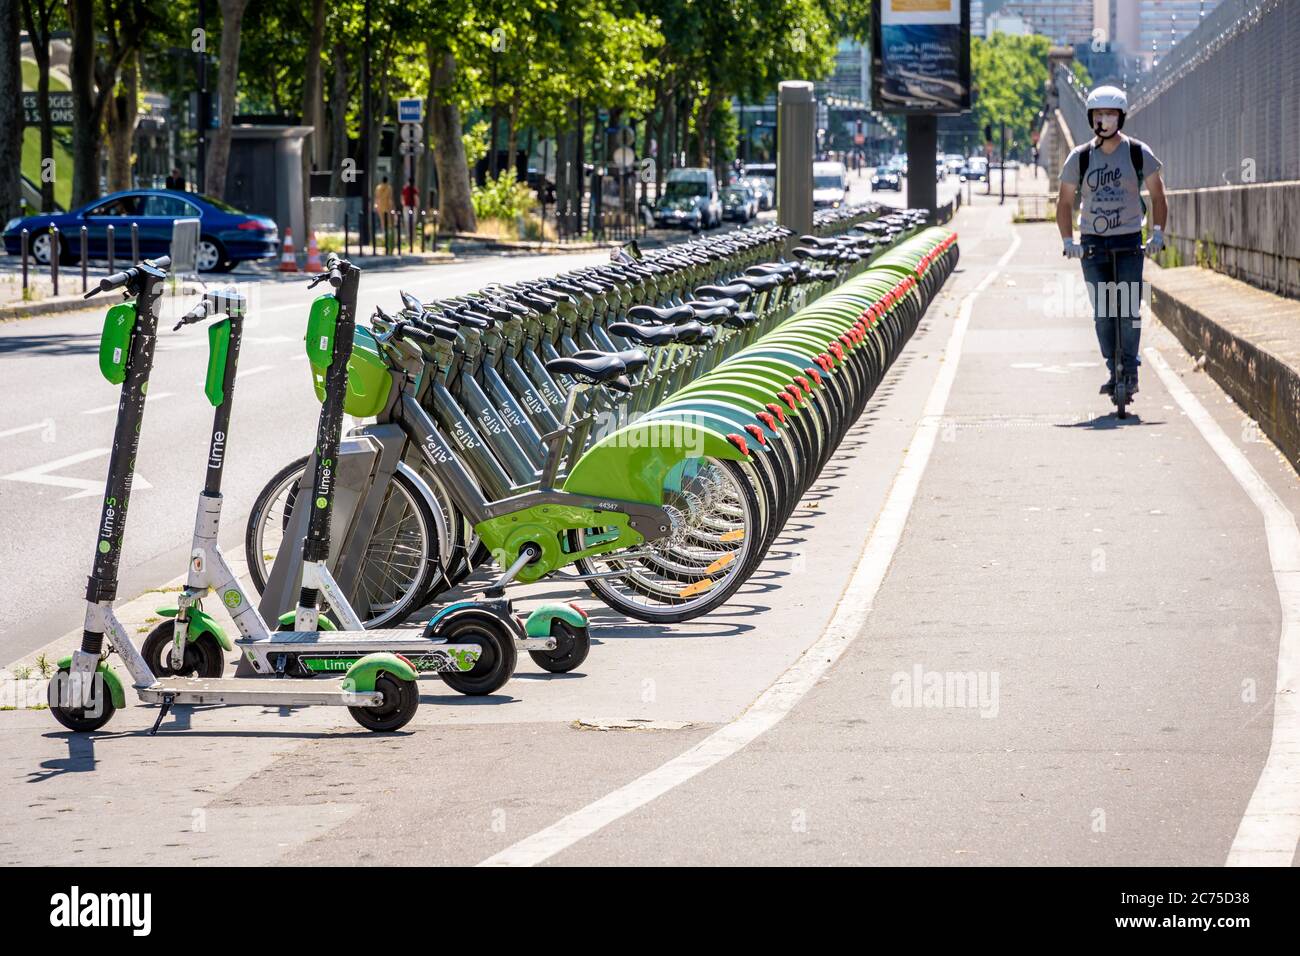 Ein Mann, der einen Elektroroller auf einer Fahrradspur an einer Reihe Velib vorbei fährt, teilte Fahrräder, die an einer Station zusammen mit Lime Elektrorollern in Paris geparkt waren. Stockfoto